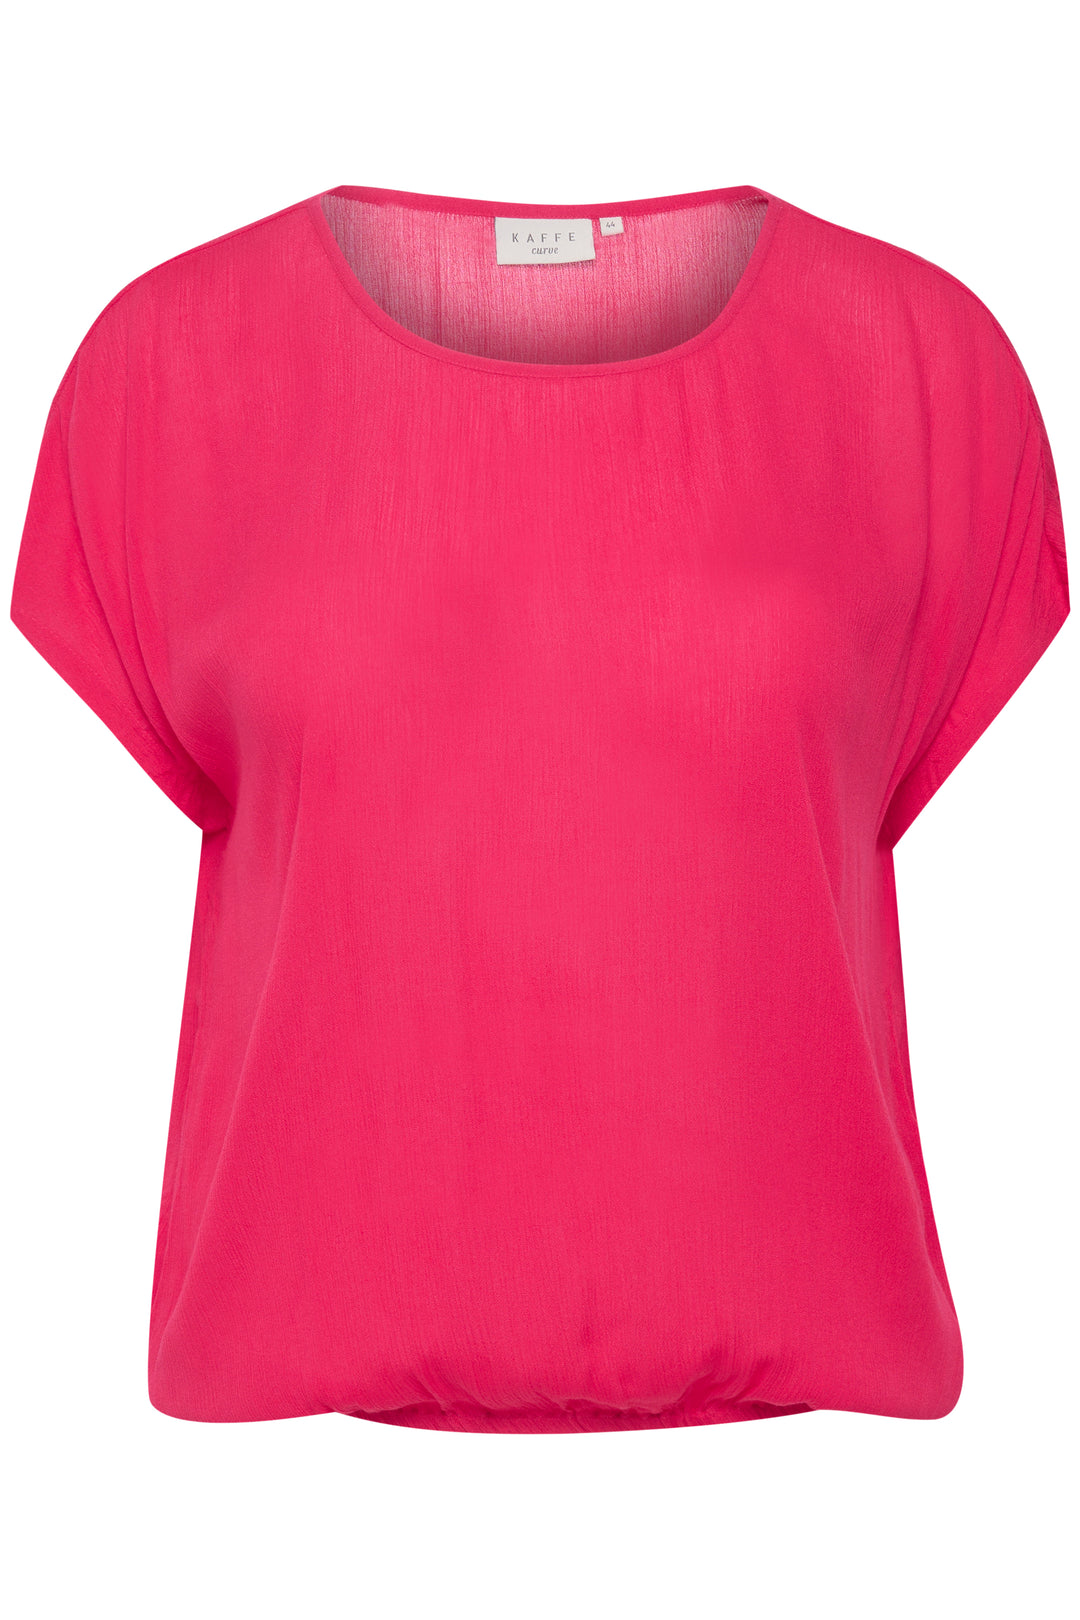 hot pink t-shirt-kaffe curve-